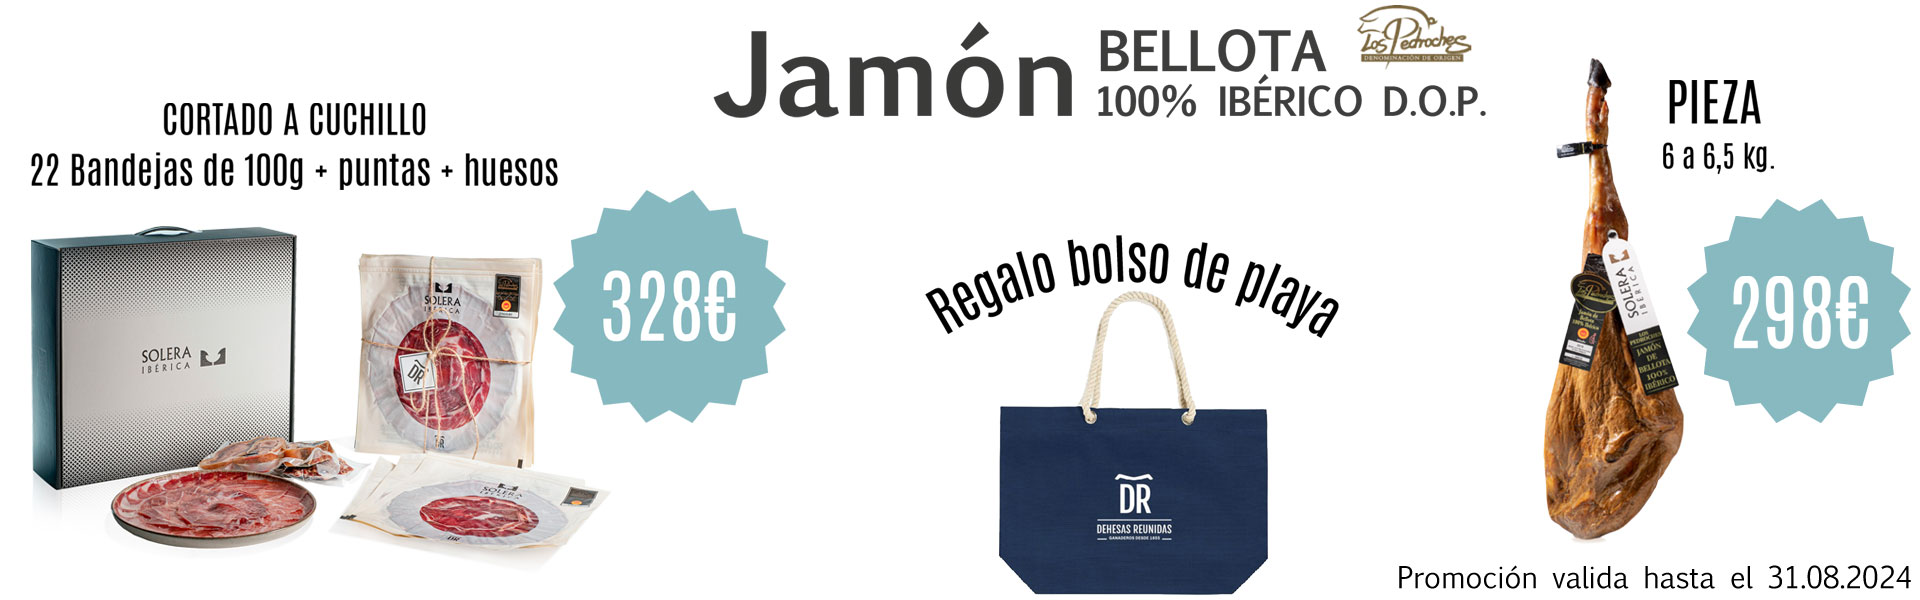 Jamón de Bellota 100% Ibérico